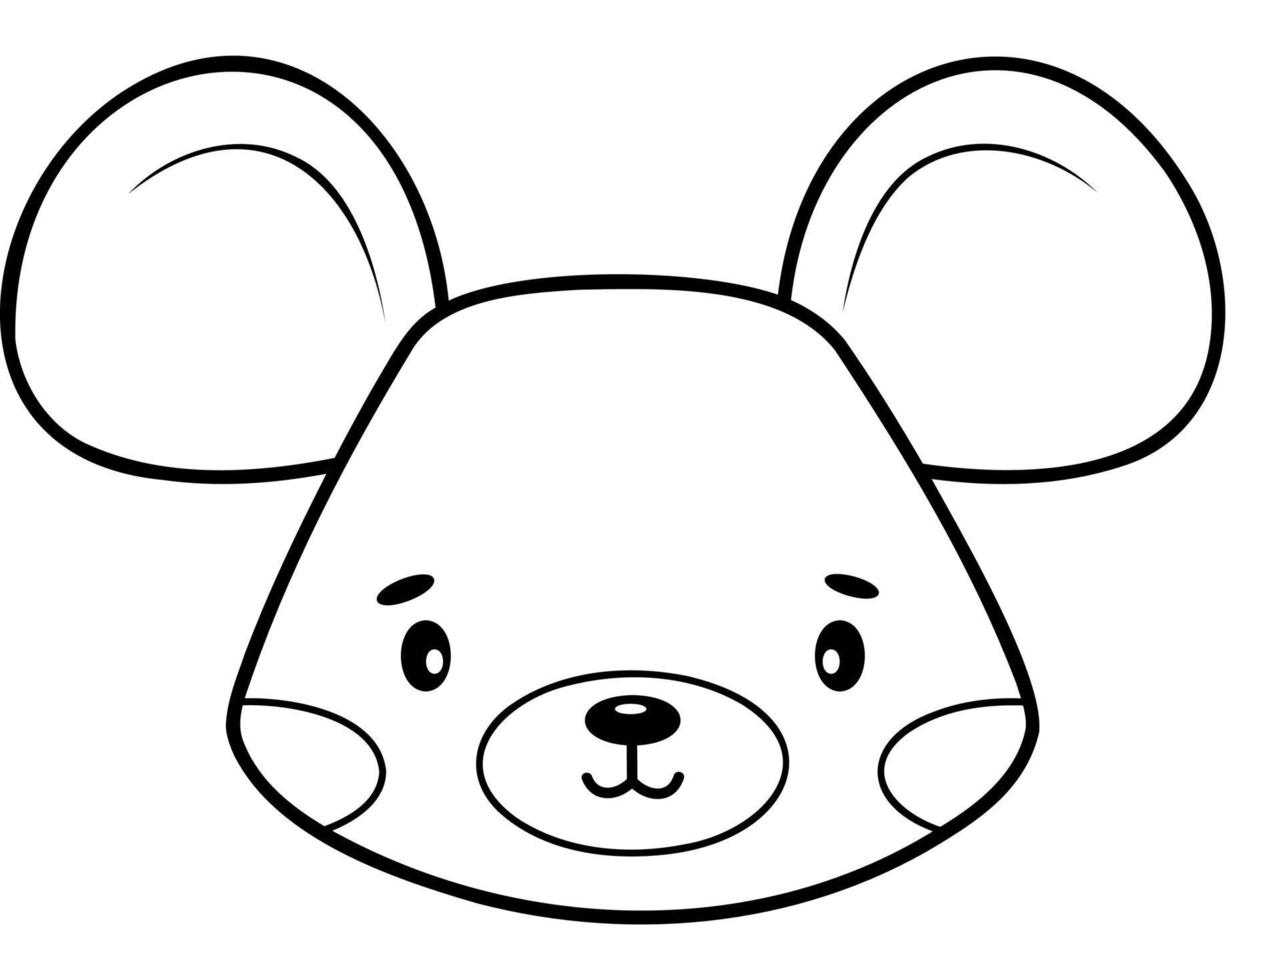 kleurboek of pagina voor kinderen. muis zwart-wit overzicht illustratie. vector